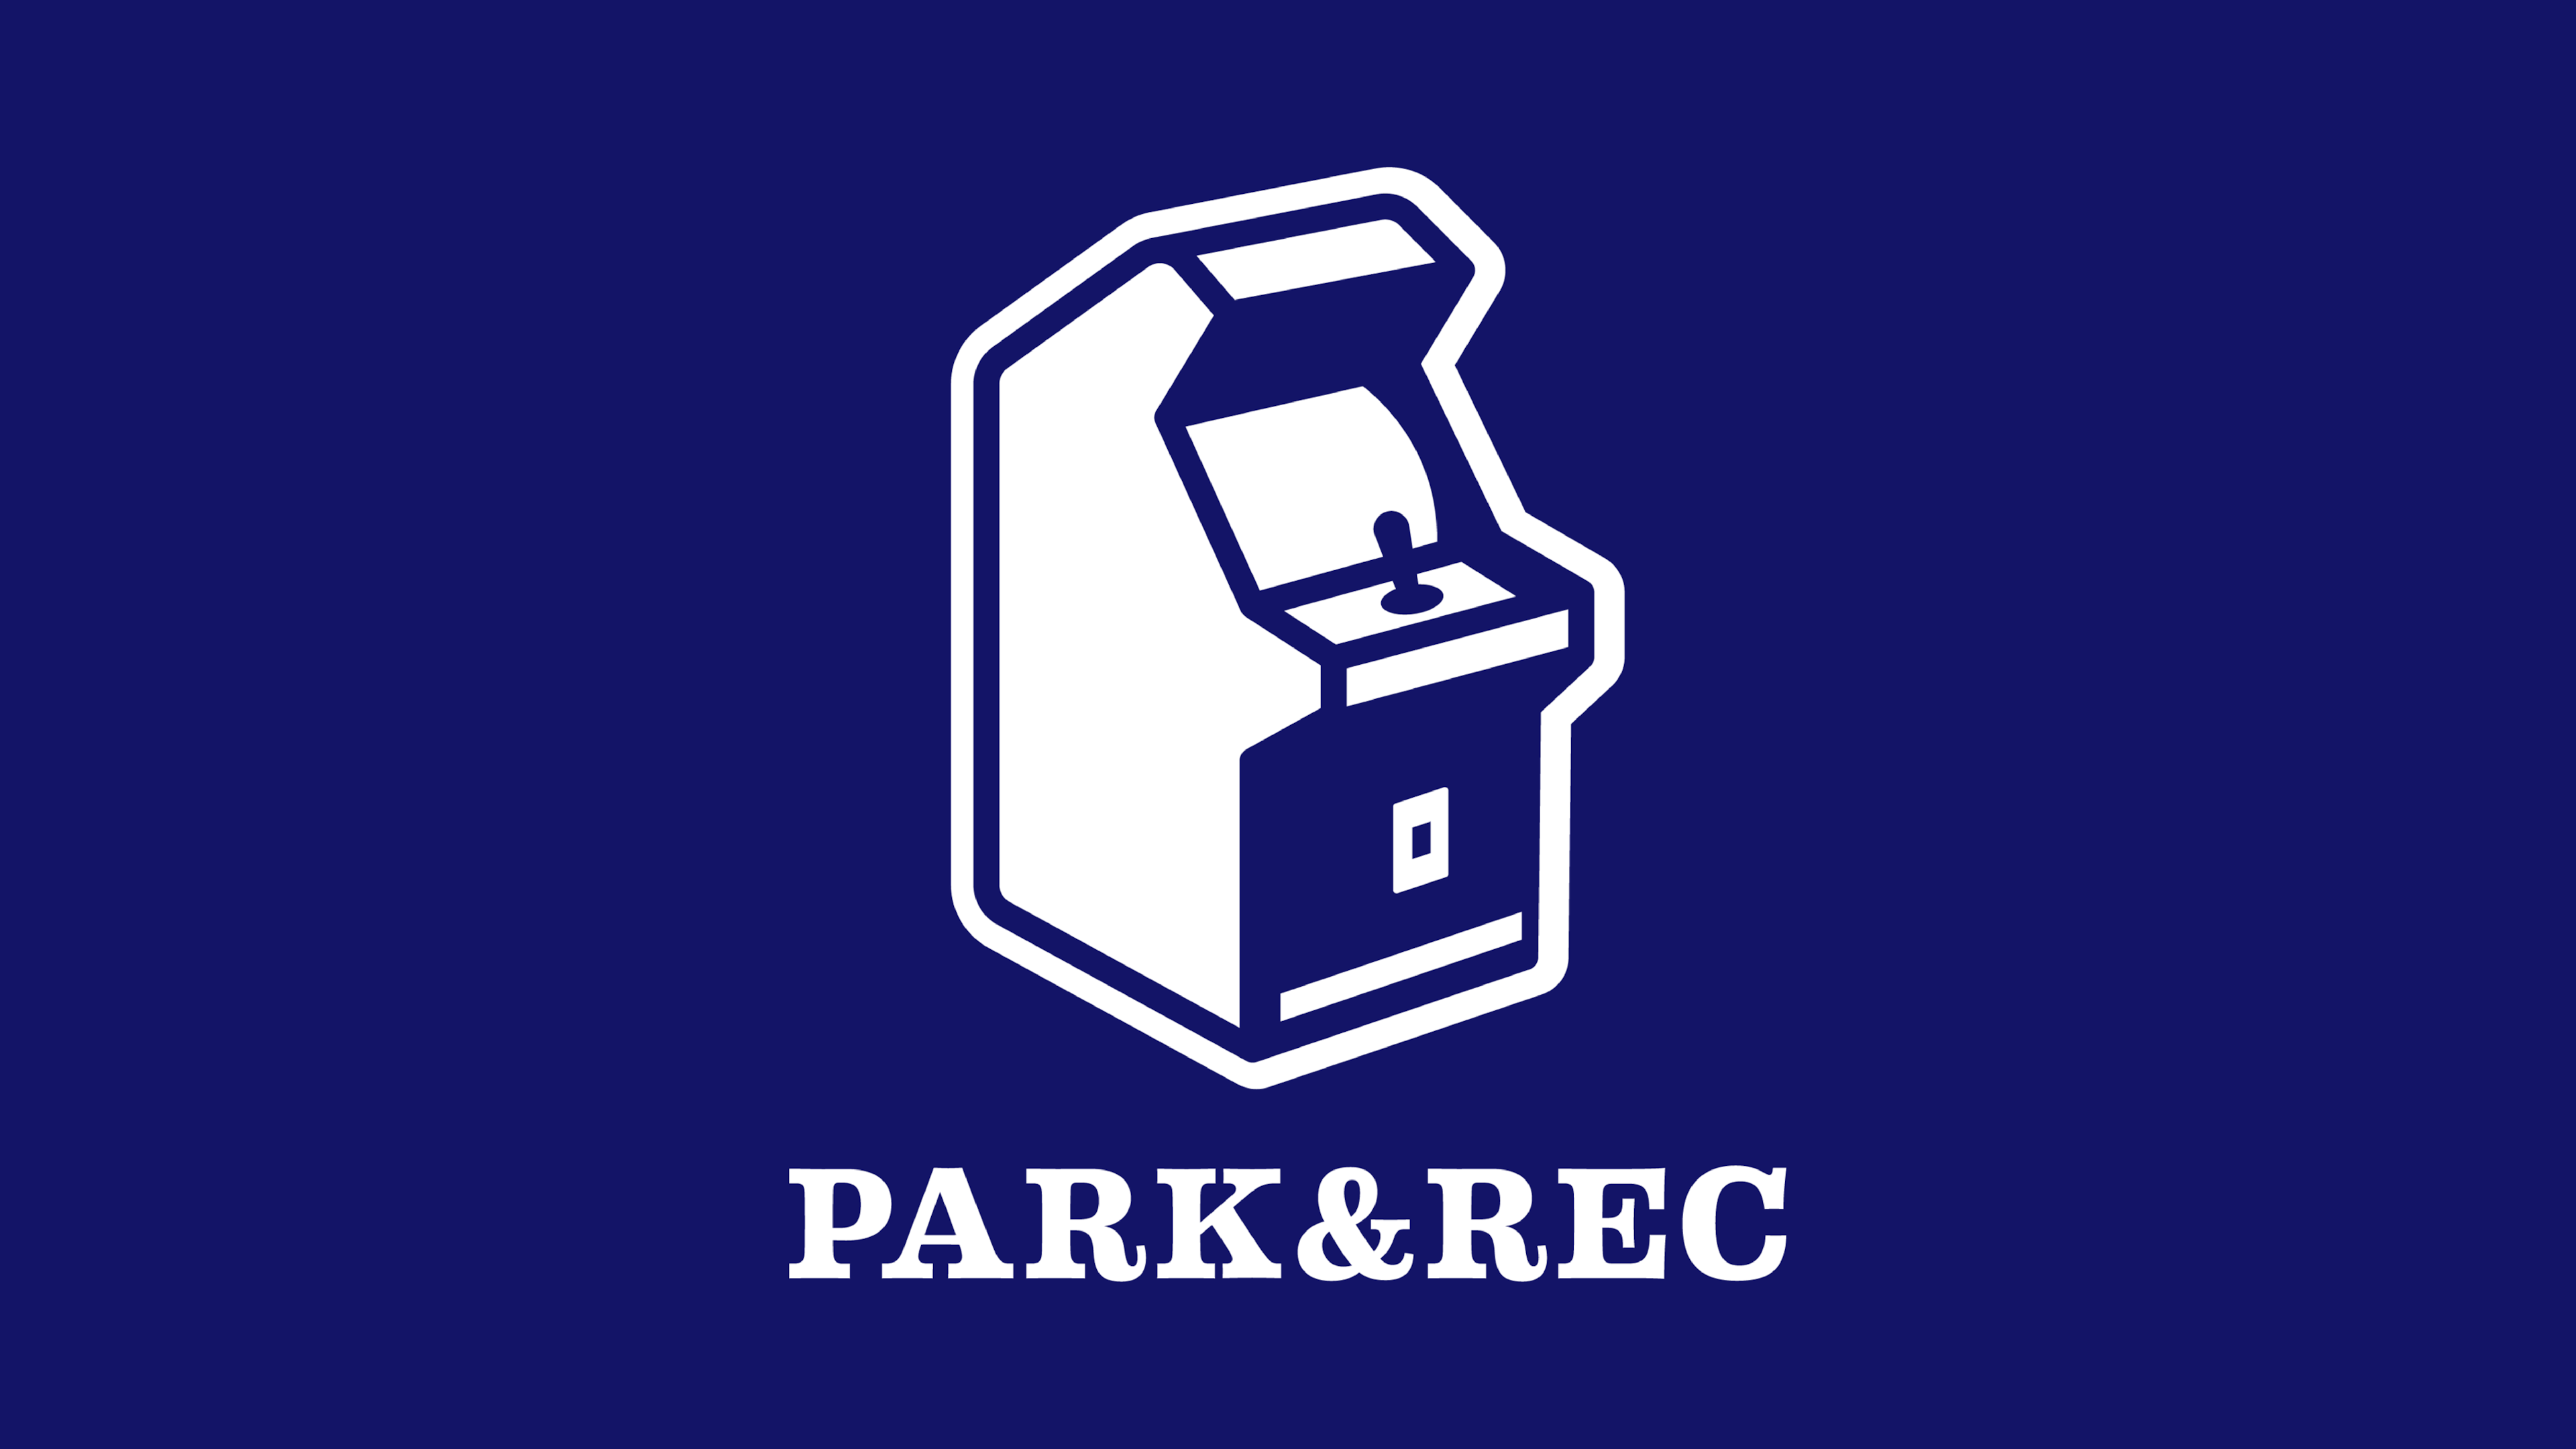 Park & Rec